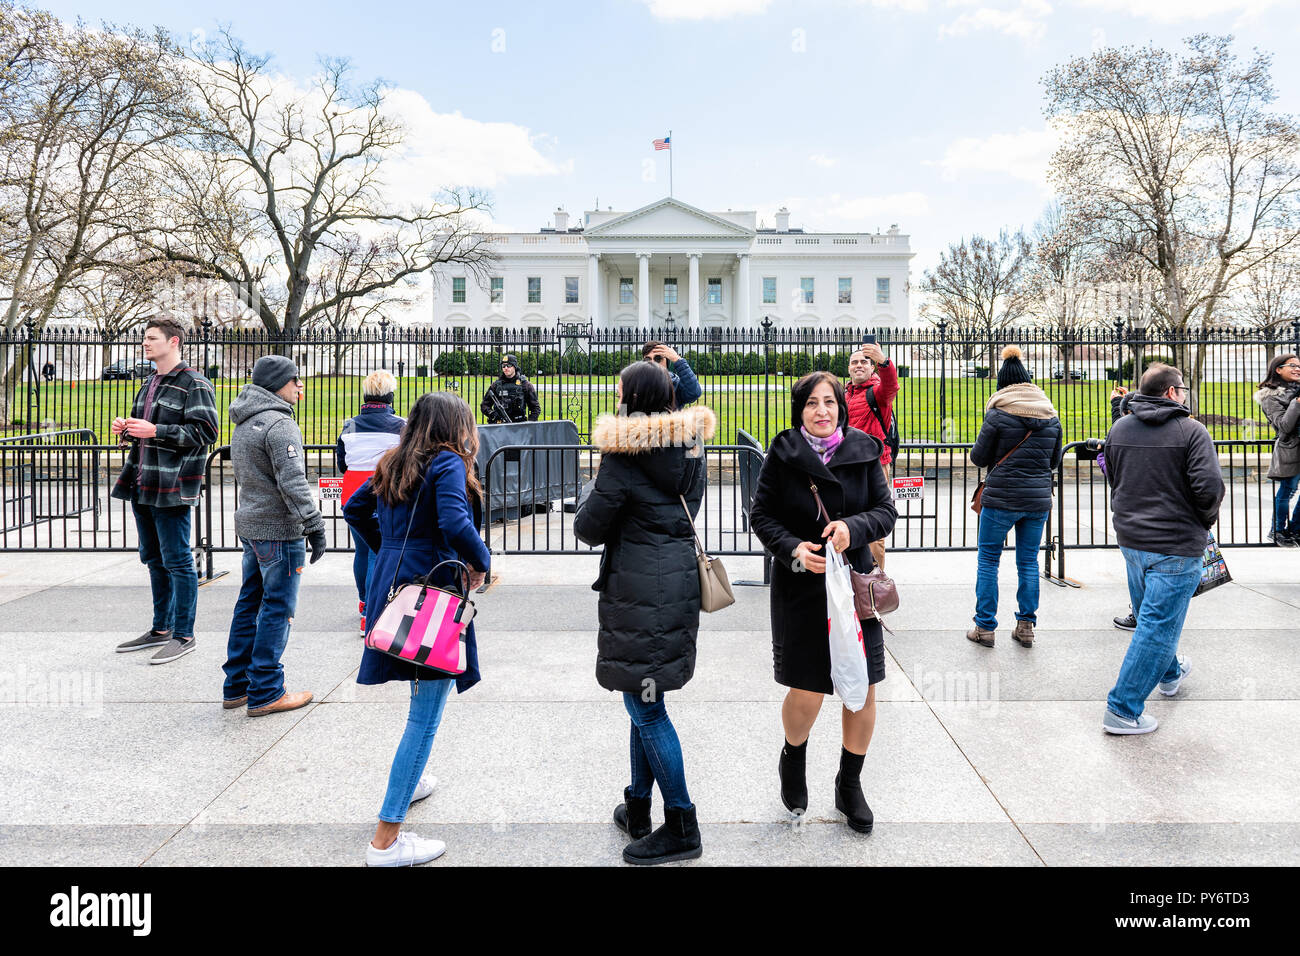 Washington DC, USA - 9. März 2018: die Masse der Leute, Touristen im White House Präsident Gebäude in der Hauptstadt der Vereinigten Staaten im Kalten Winter Stockfoto